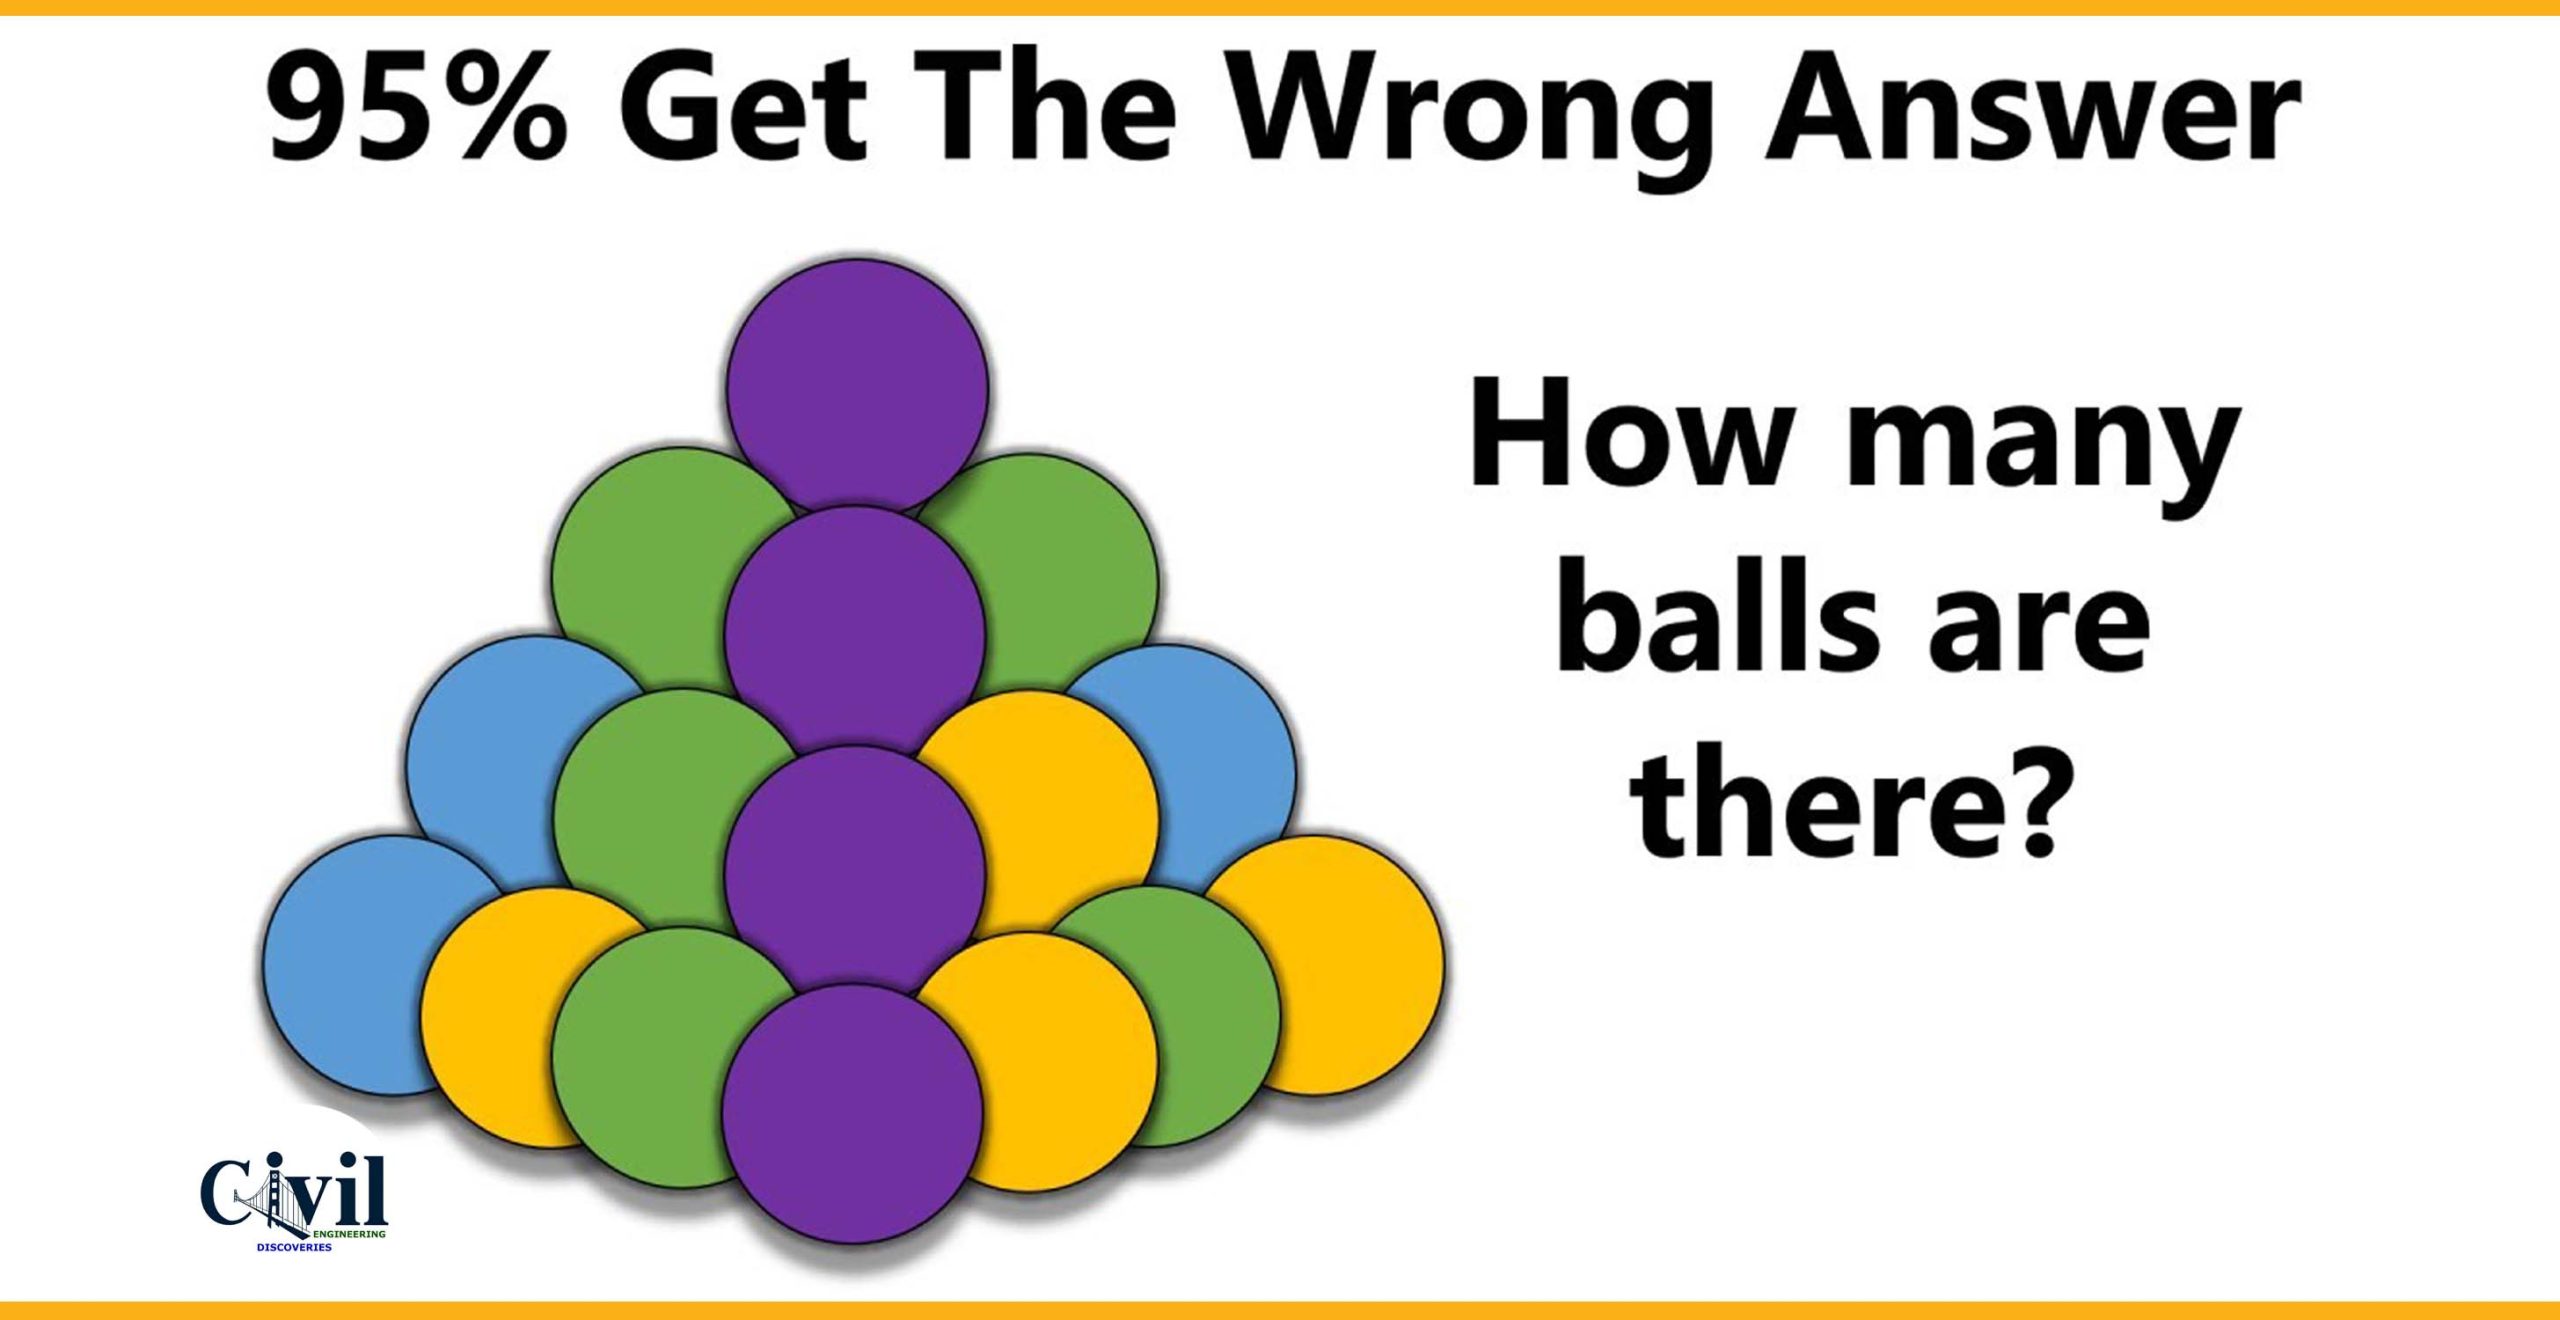 How many balls